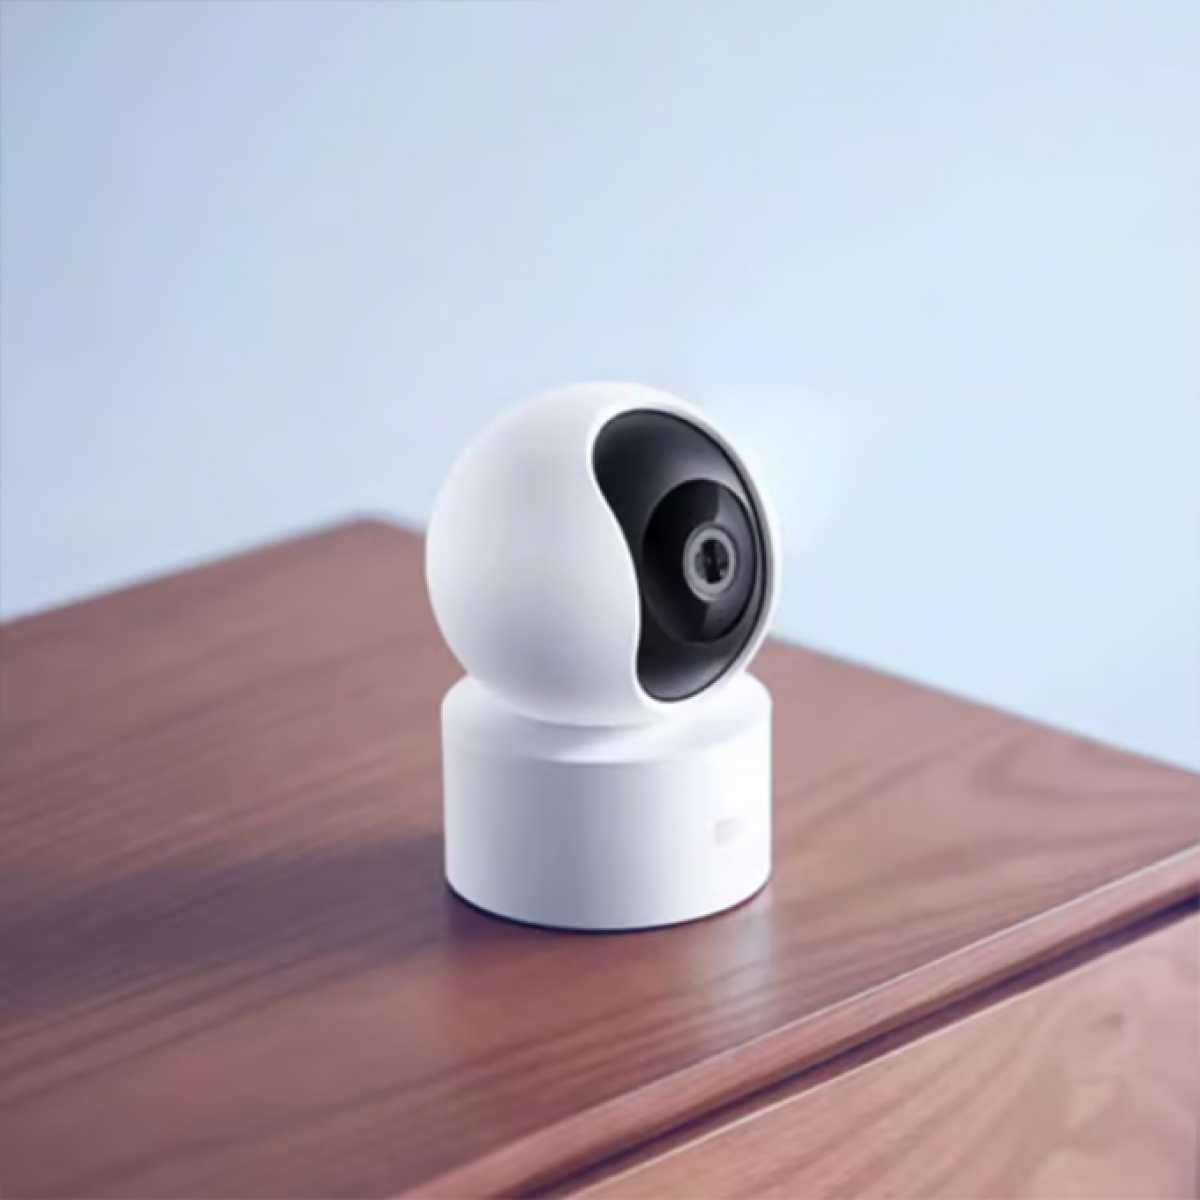 كاميرا مراقبة منزلية من شاومي مي 360 درجة - ابيض